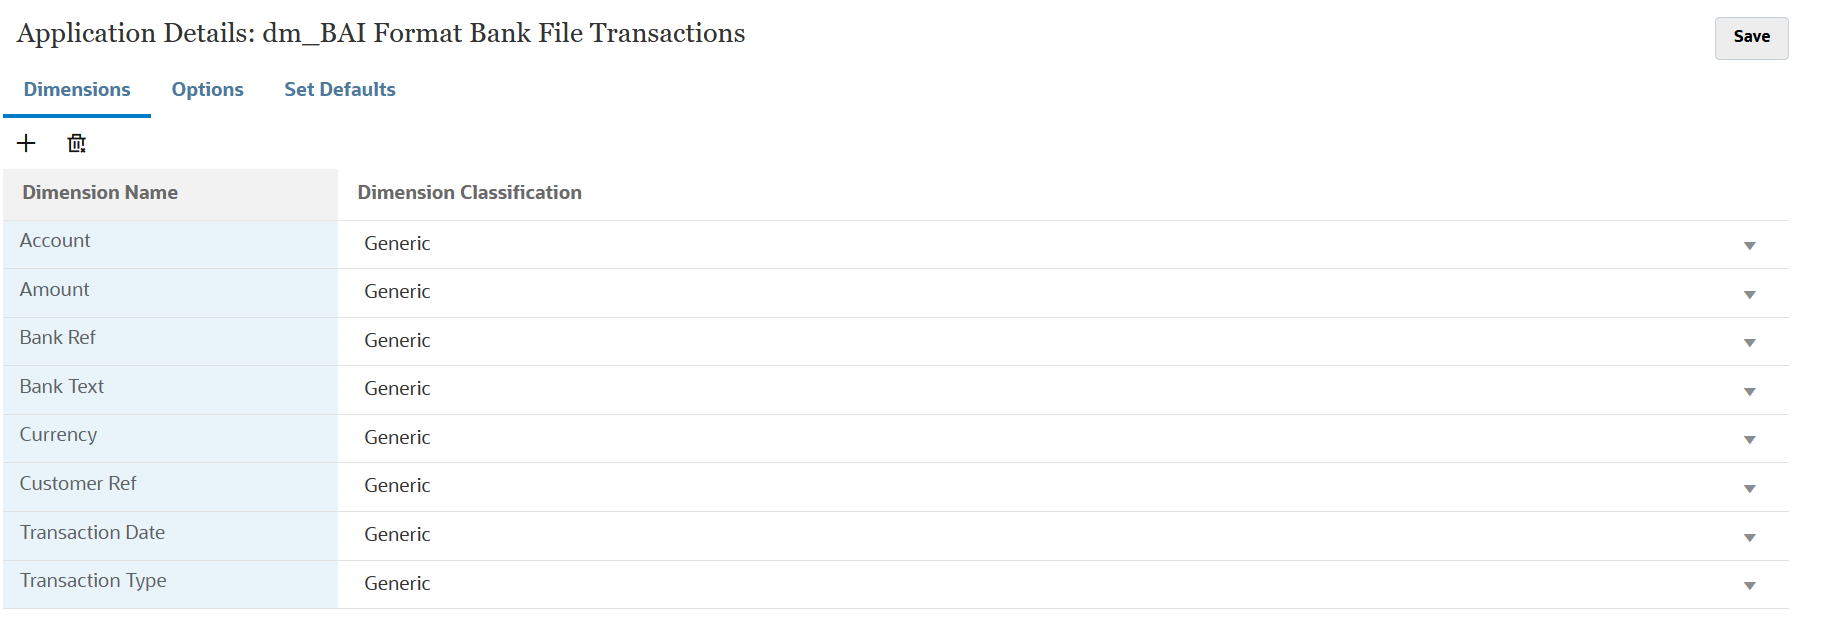 Das Bild zeigt Dimensionsdetails für Transaktionen mit Bankdateien im BAI-Format.